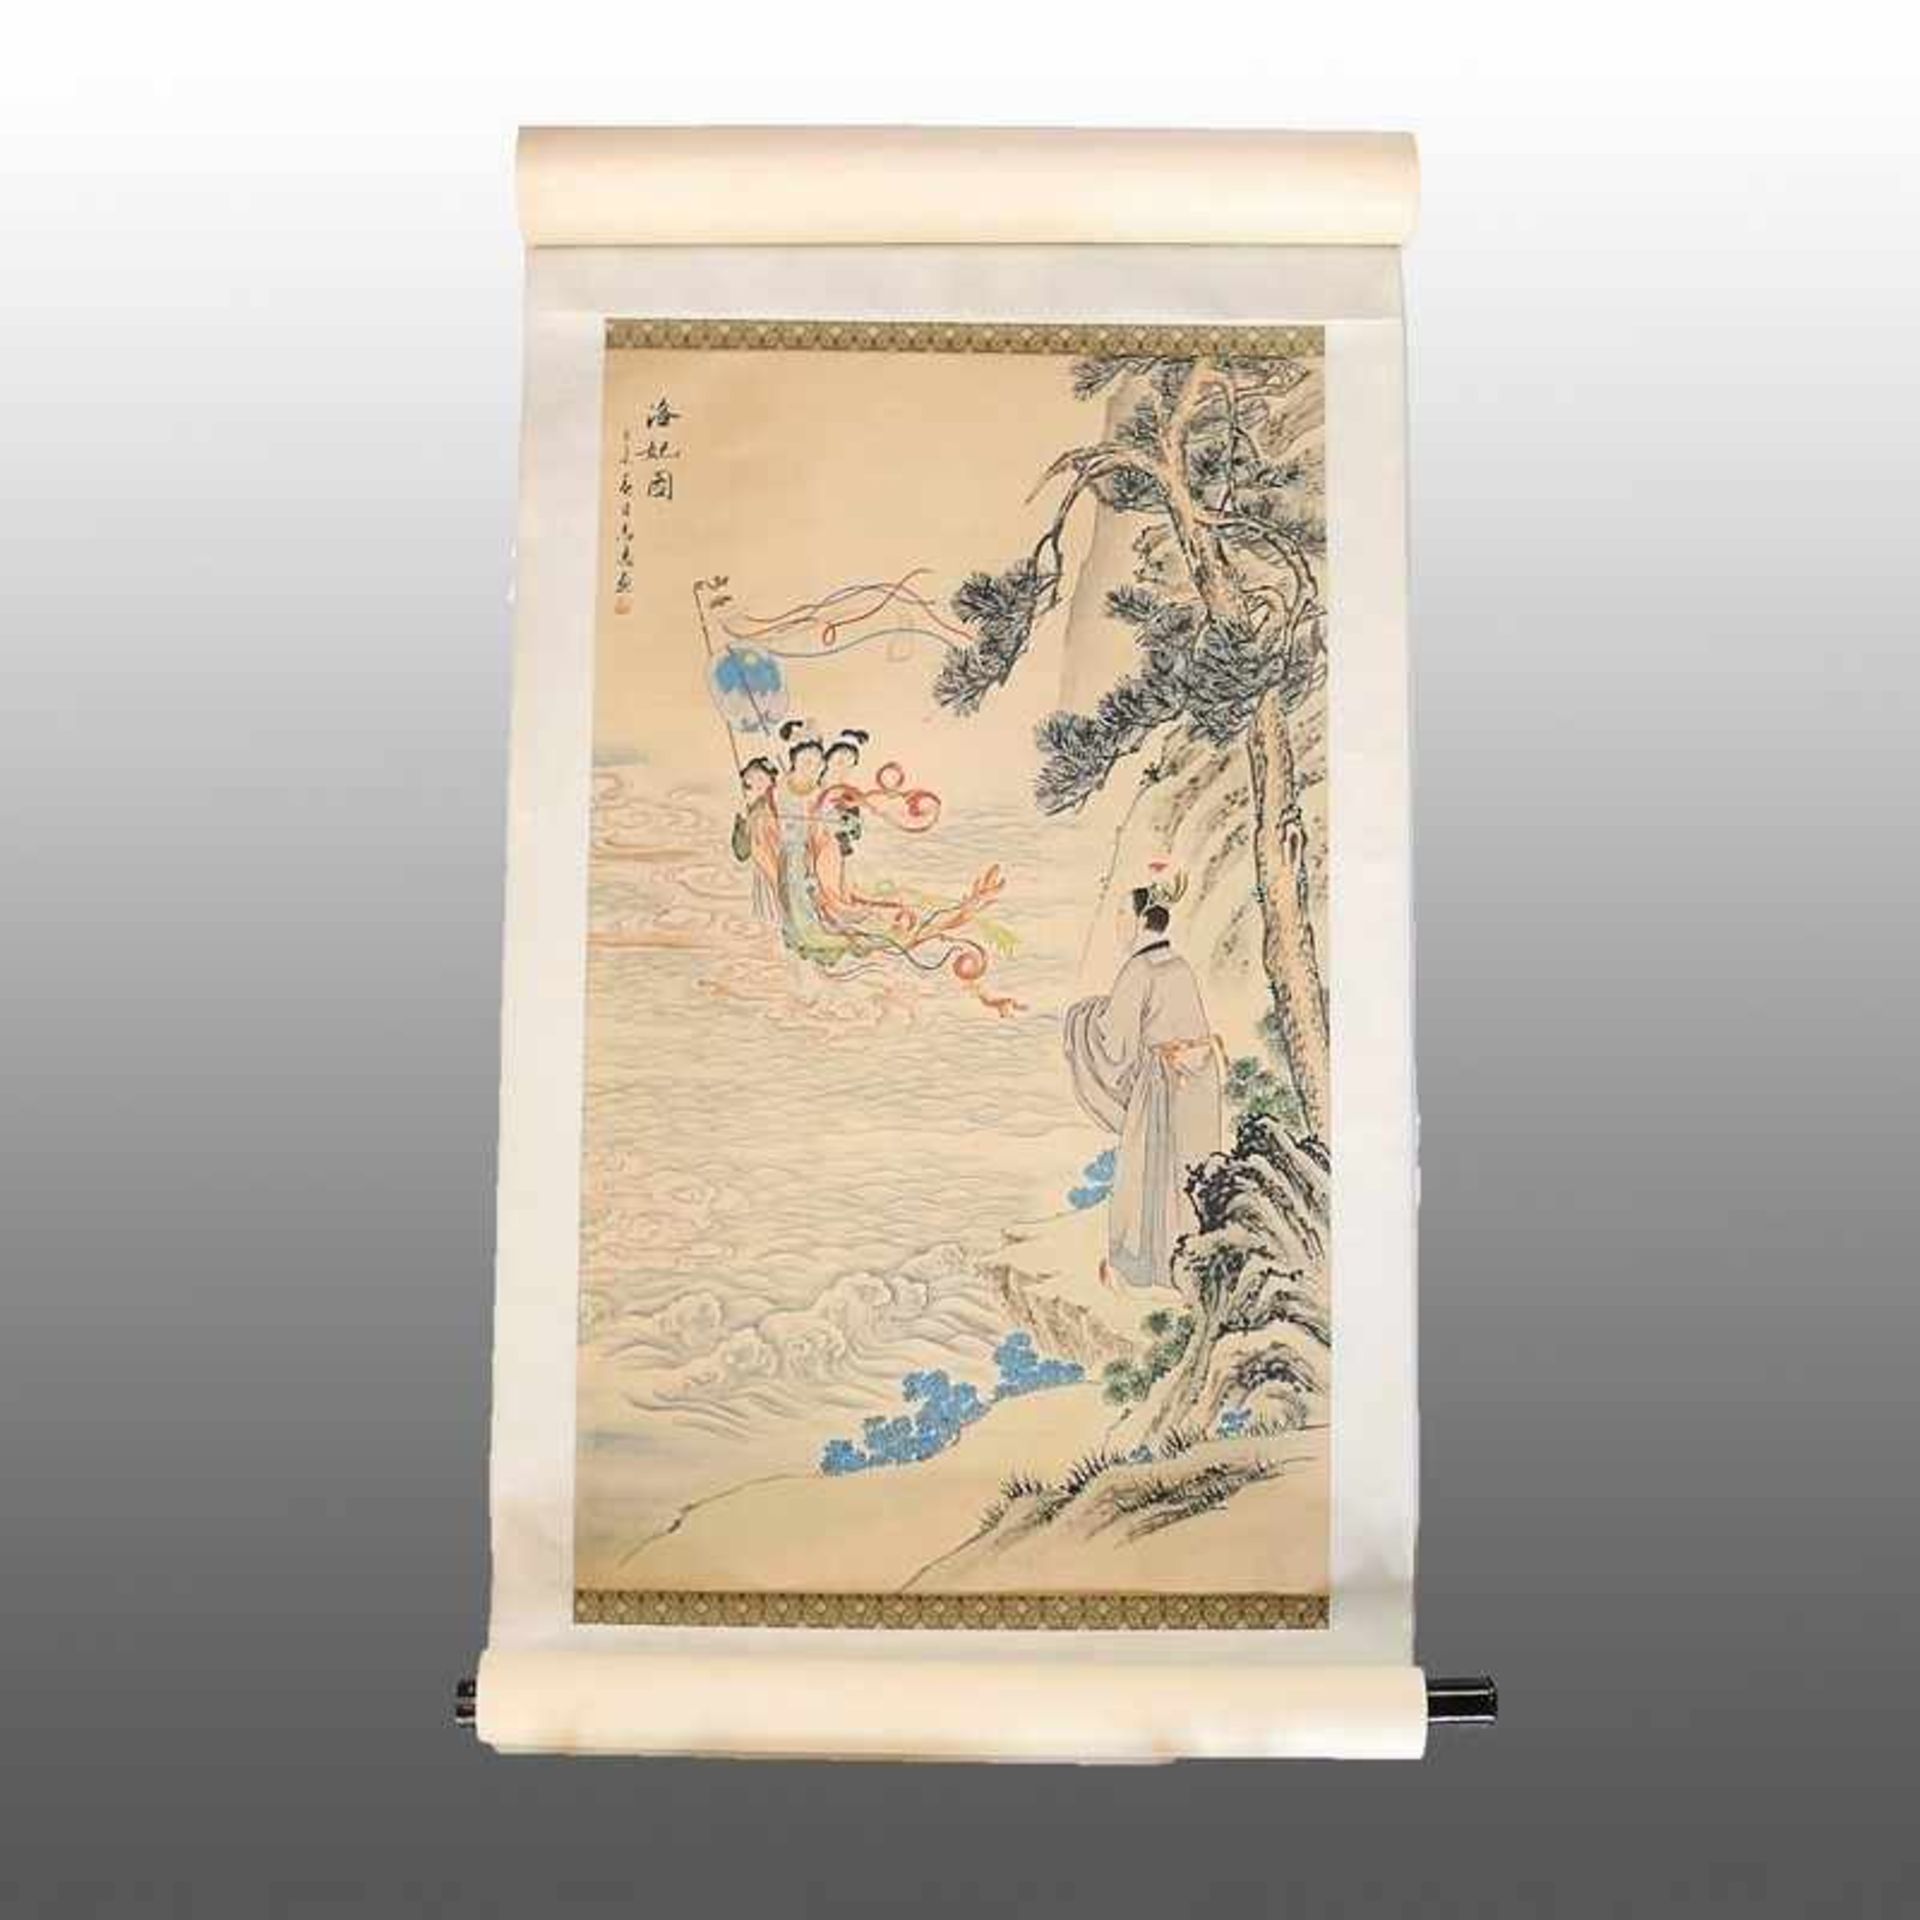 Blderrolle 20.Jh., China, Papierrolle m. Seide aufgezogen, darauf Seidenmalerei, Tusche, Darstellung